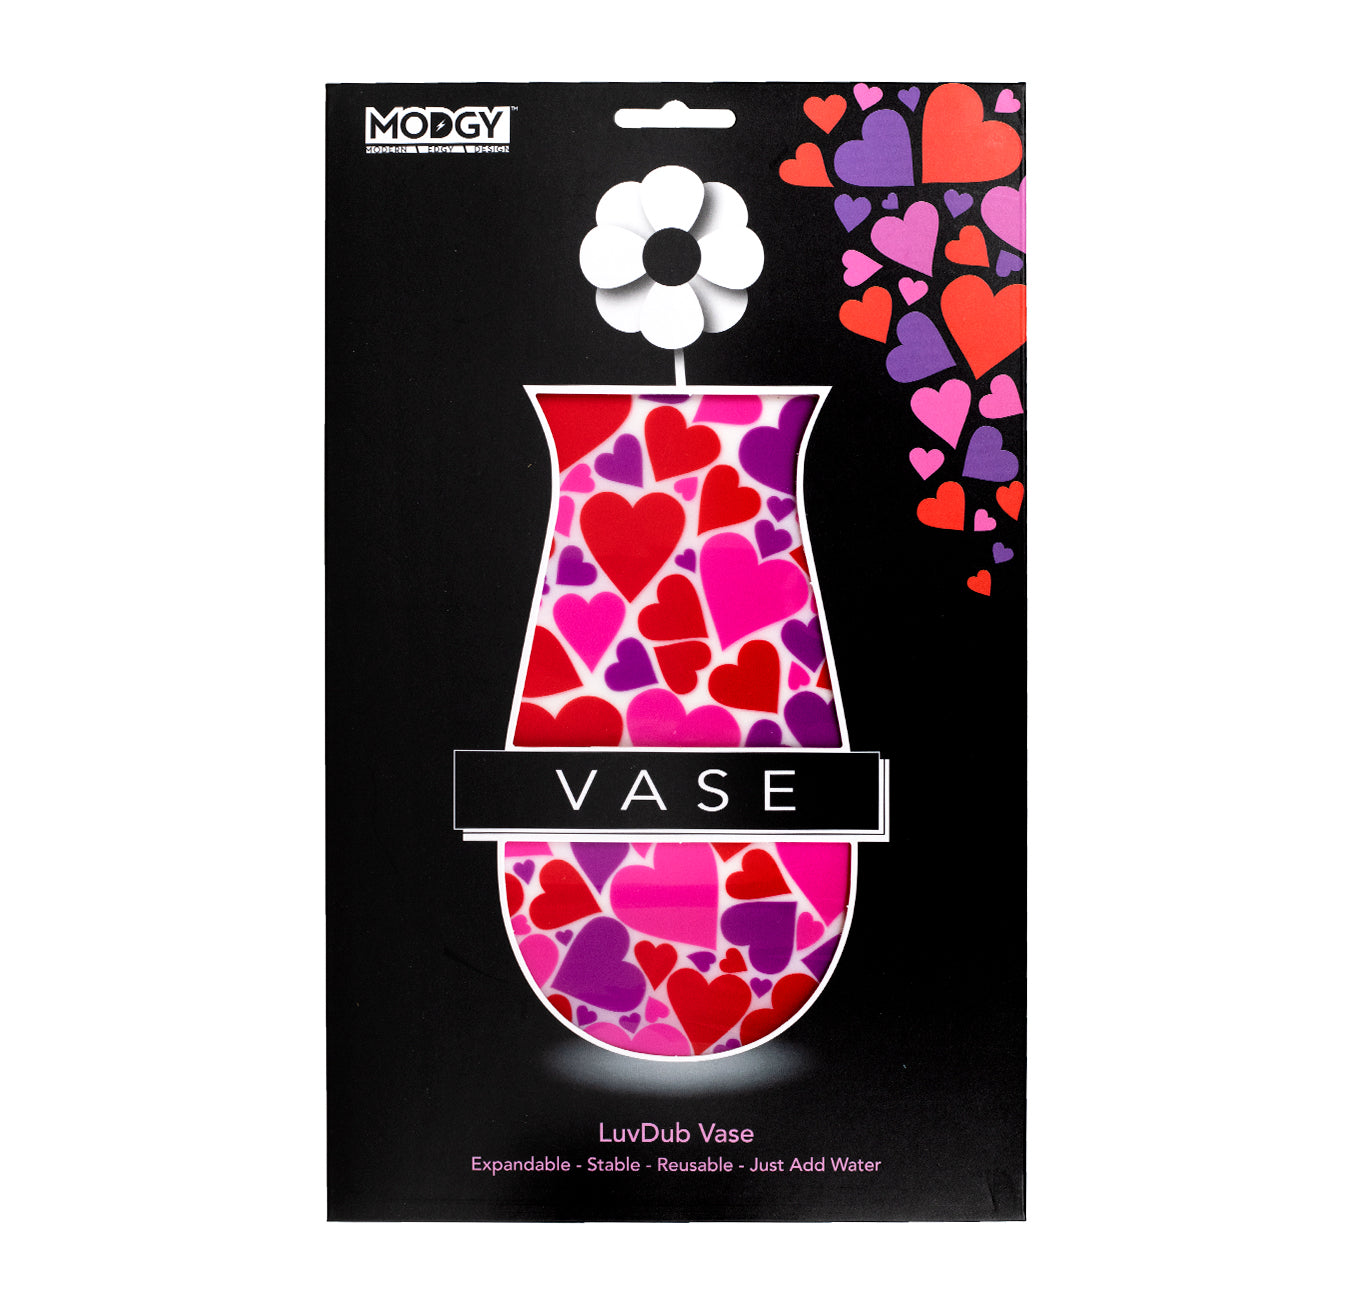 Modgy Expandable Vase - LuvDub Vase